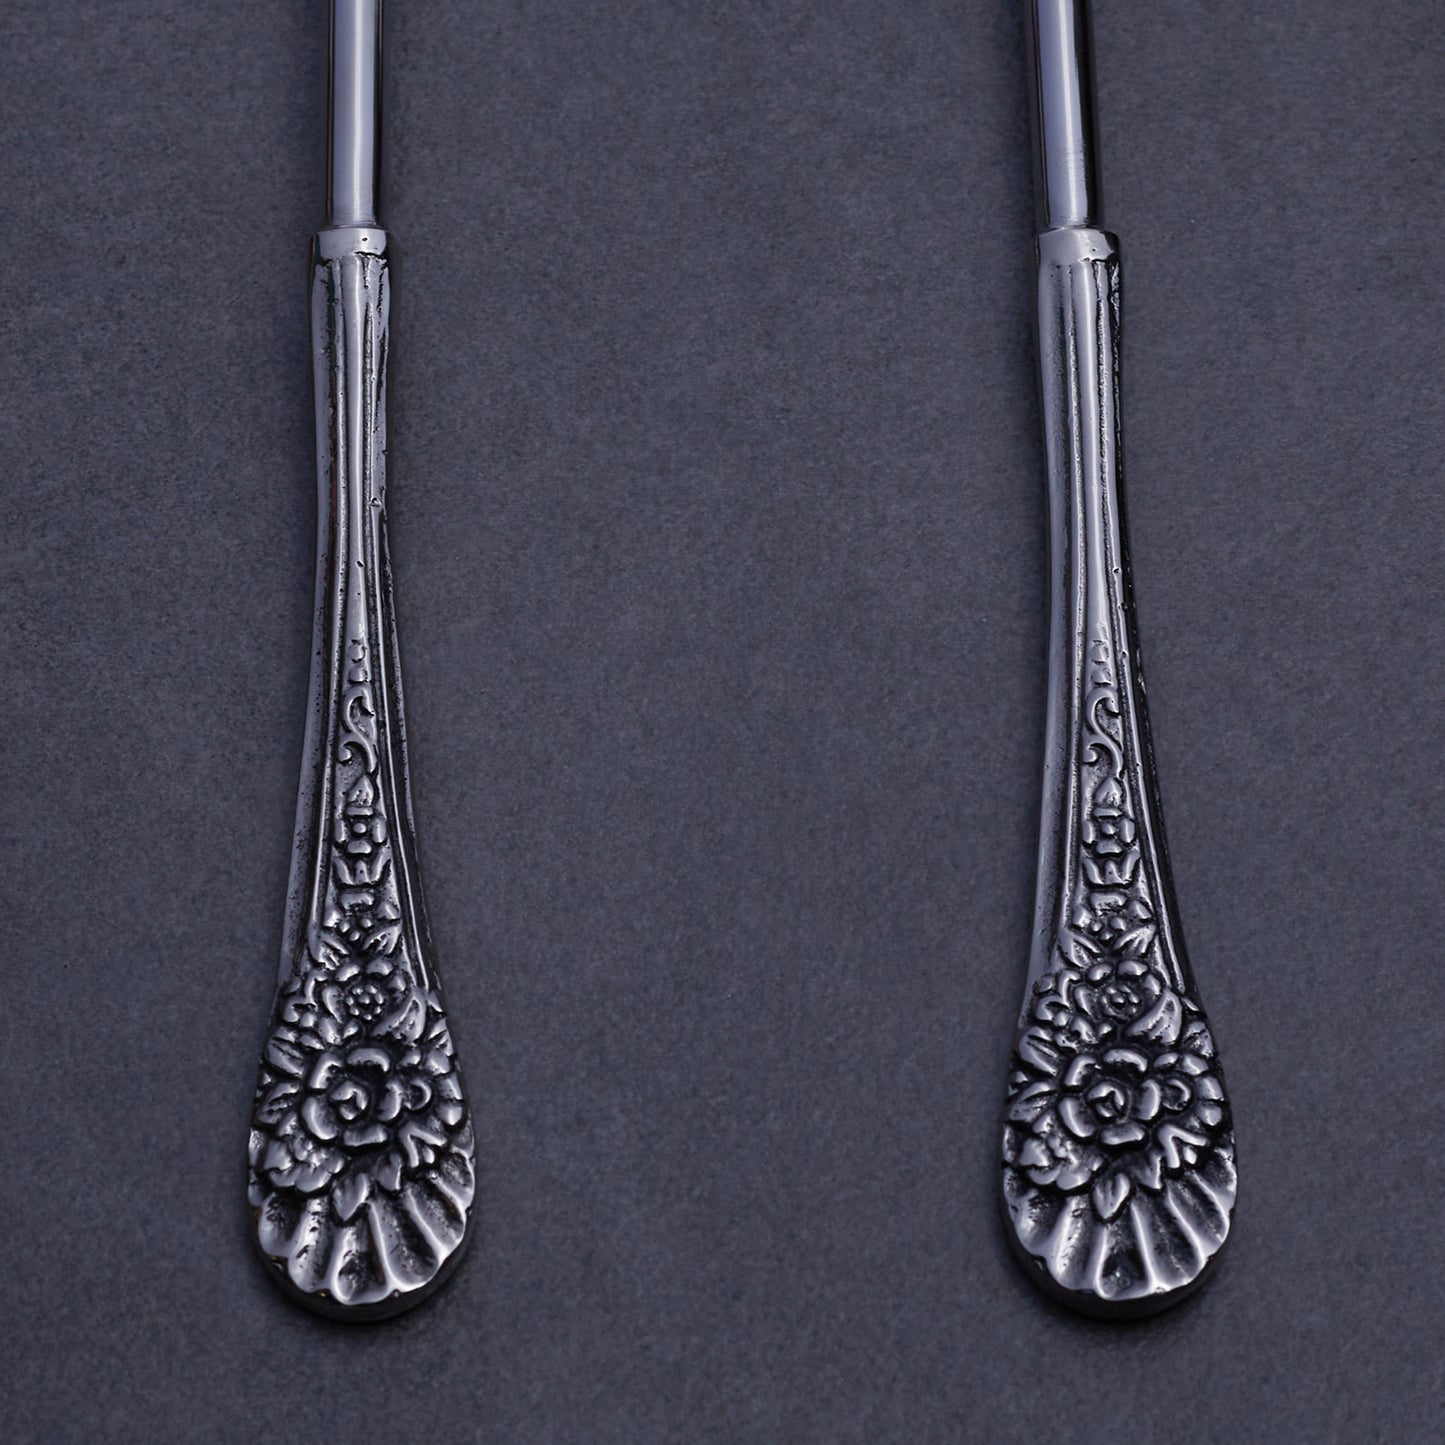 Antique Silver Serving Spoon & Fork Set